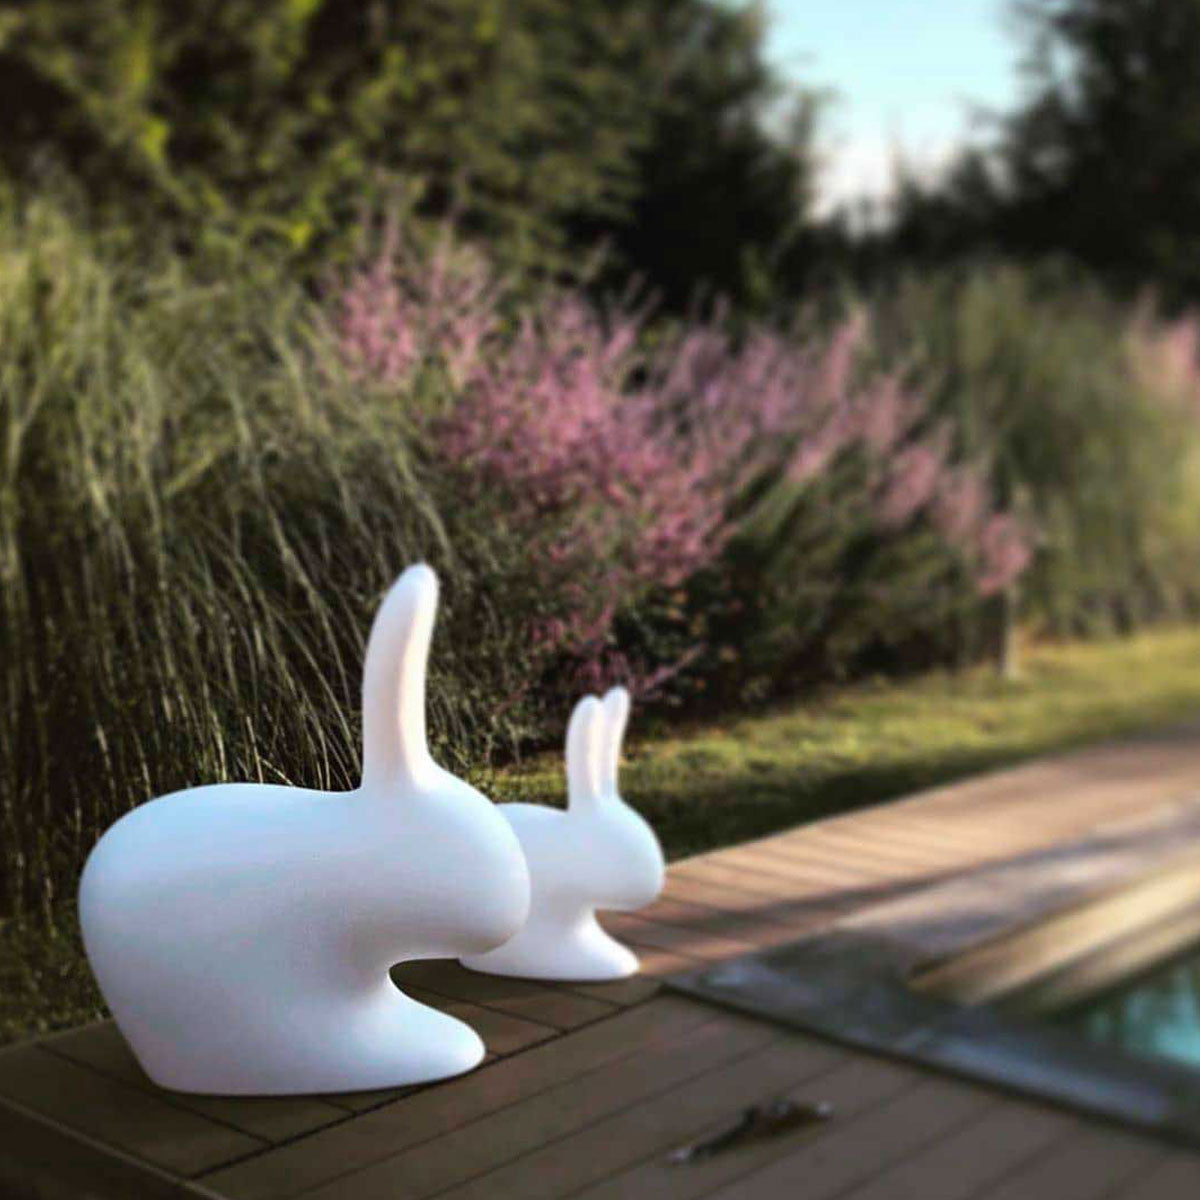 Rabbit Chair White - Qeeboo